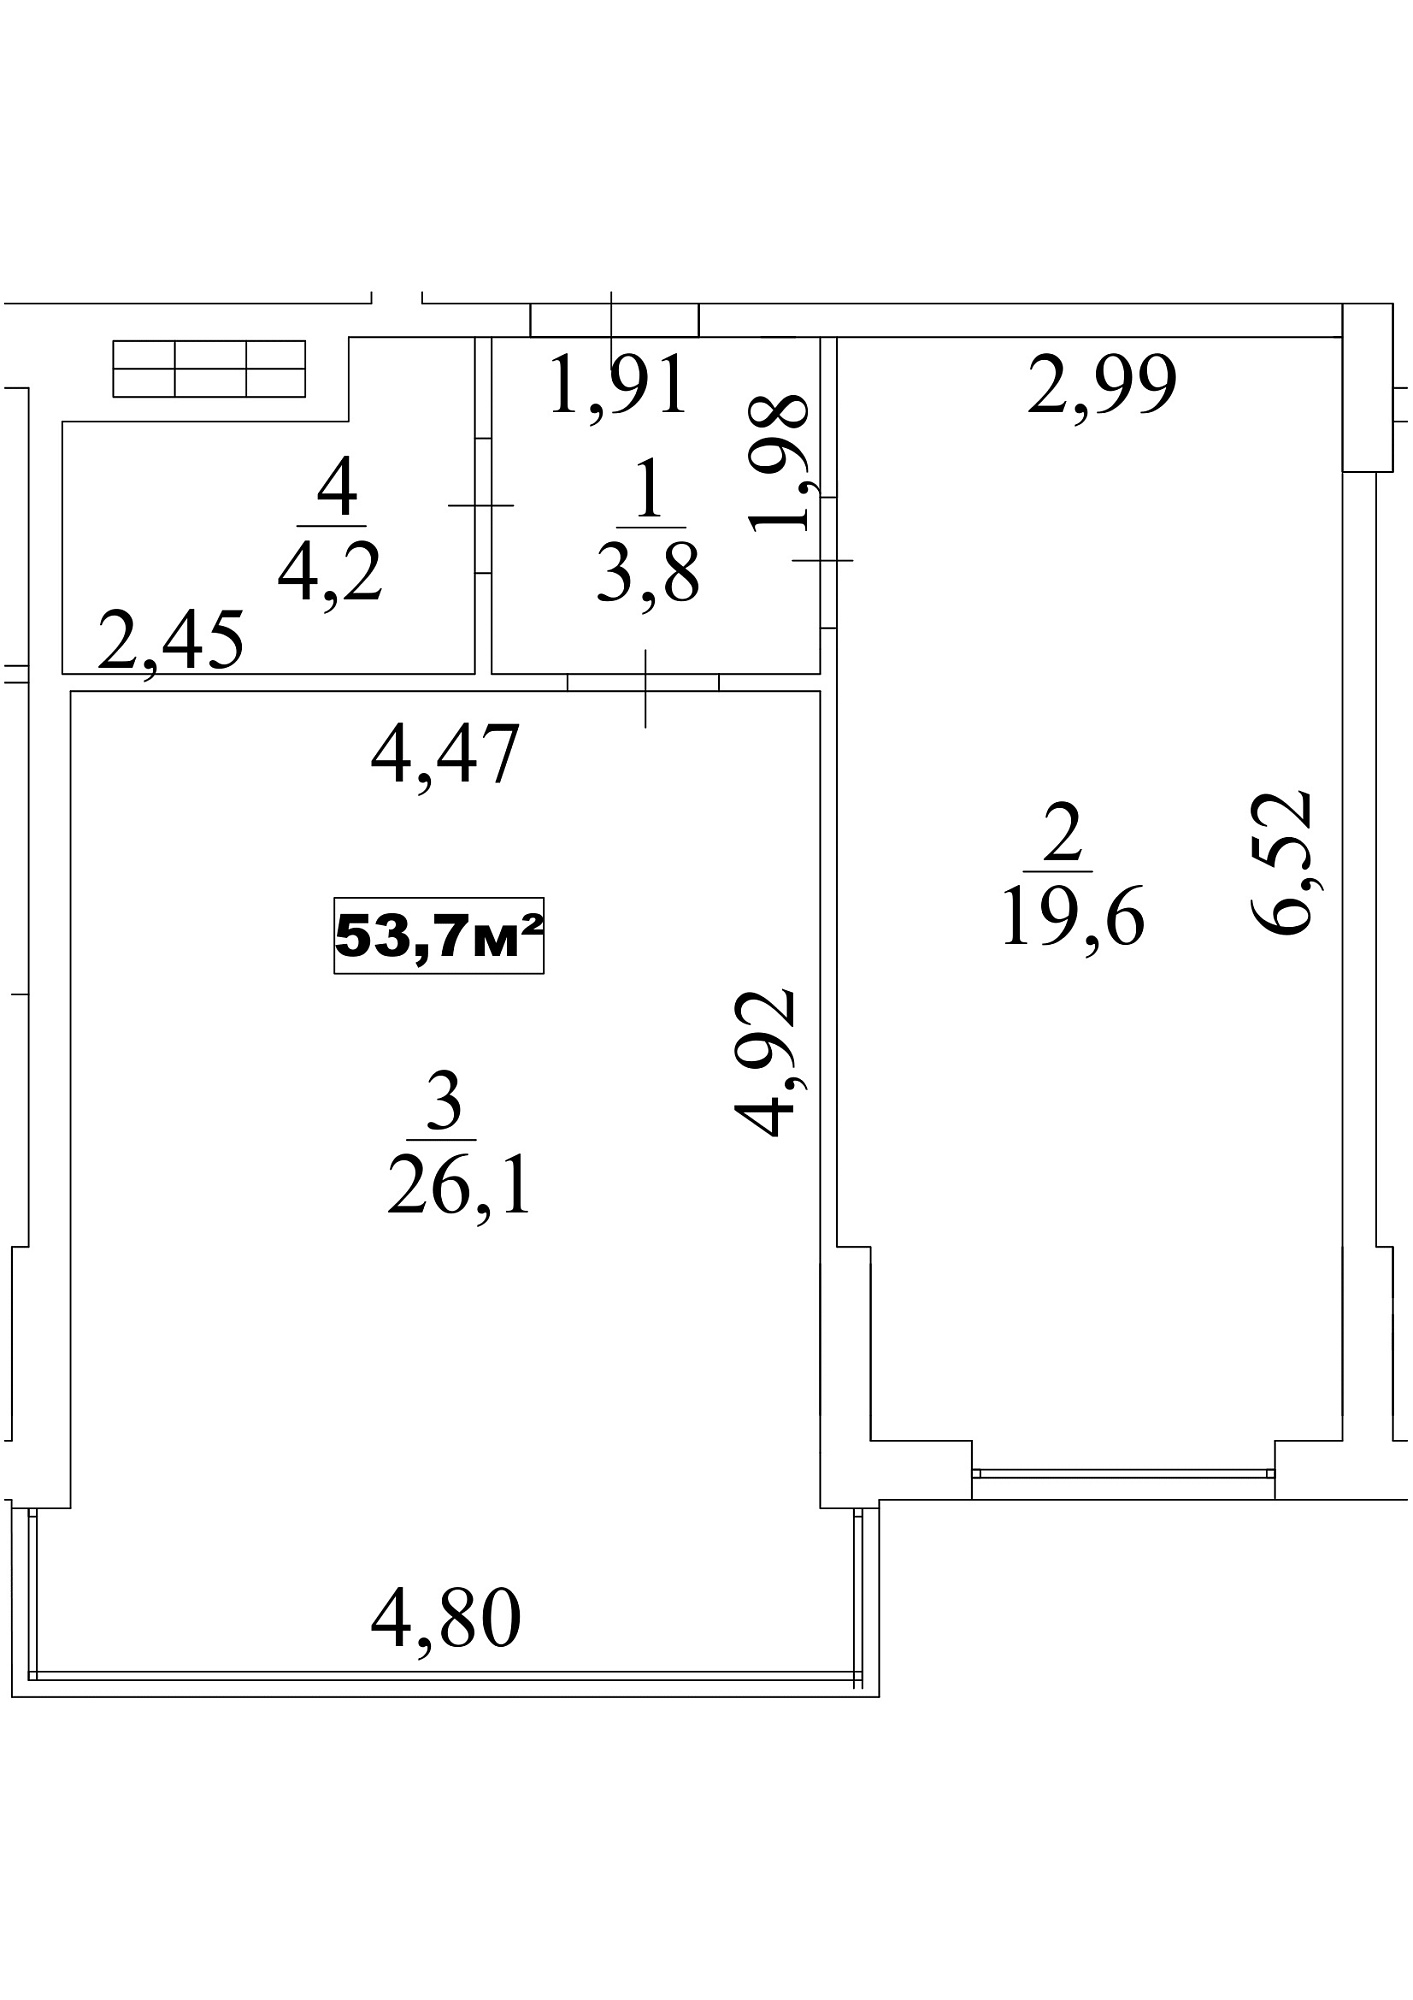 Планировка 1-к квартира площей 53.7м2, AB-10-08/00071.